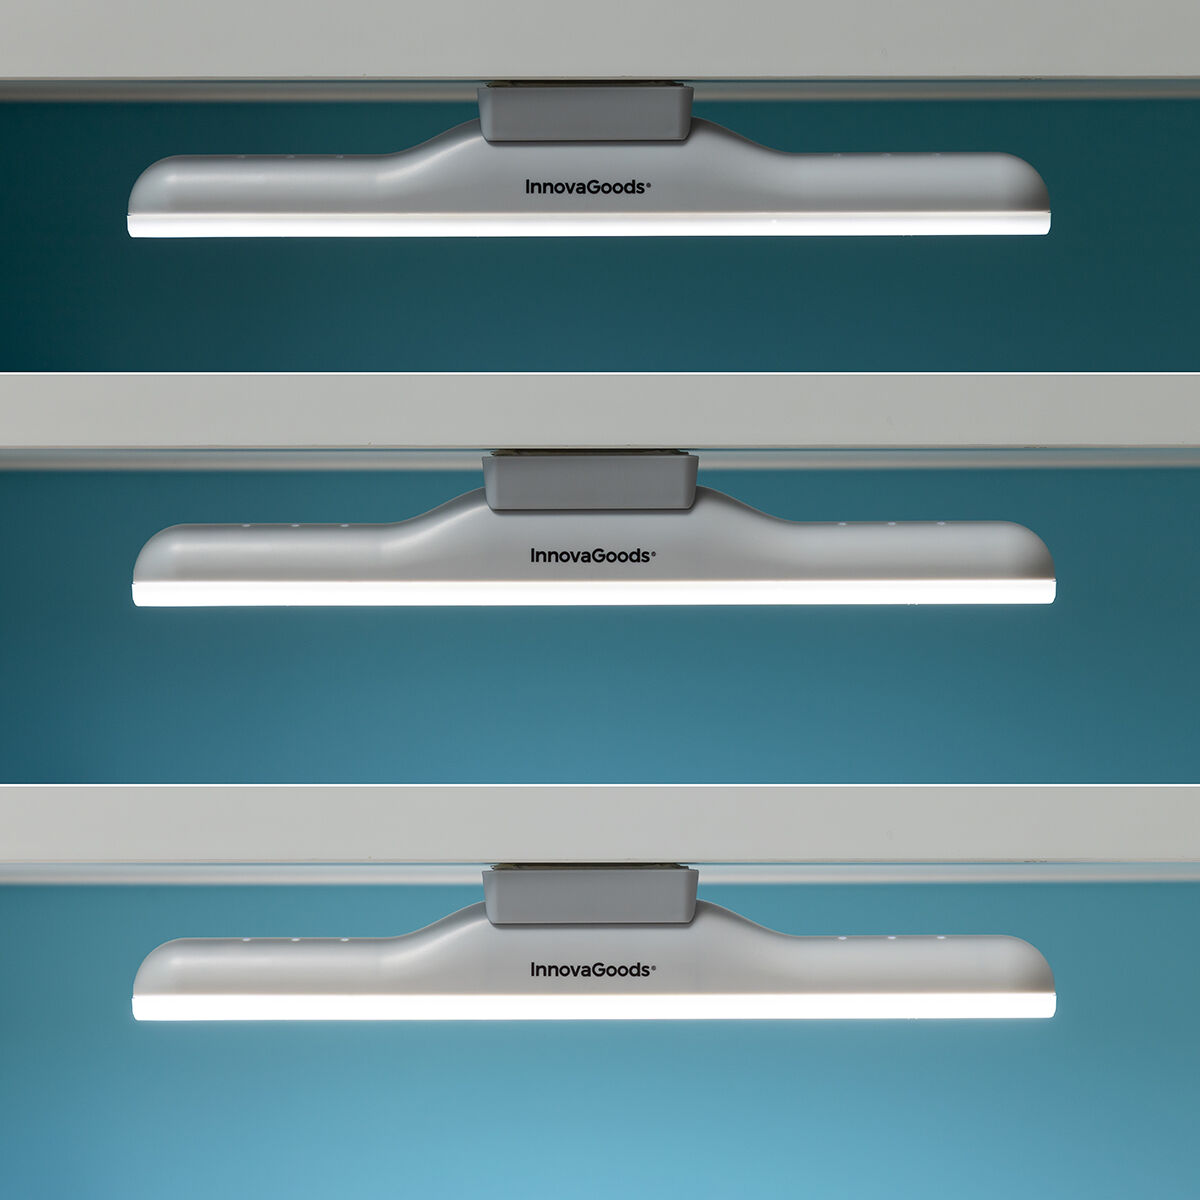 Kaufe 2-in-1 Magnetische wiederaufladbare LED-Lampe Lamal InnovaGoods bei AWK Flagship um € 29.00